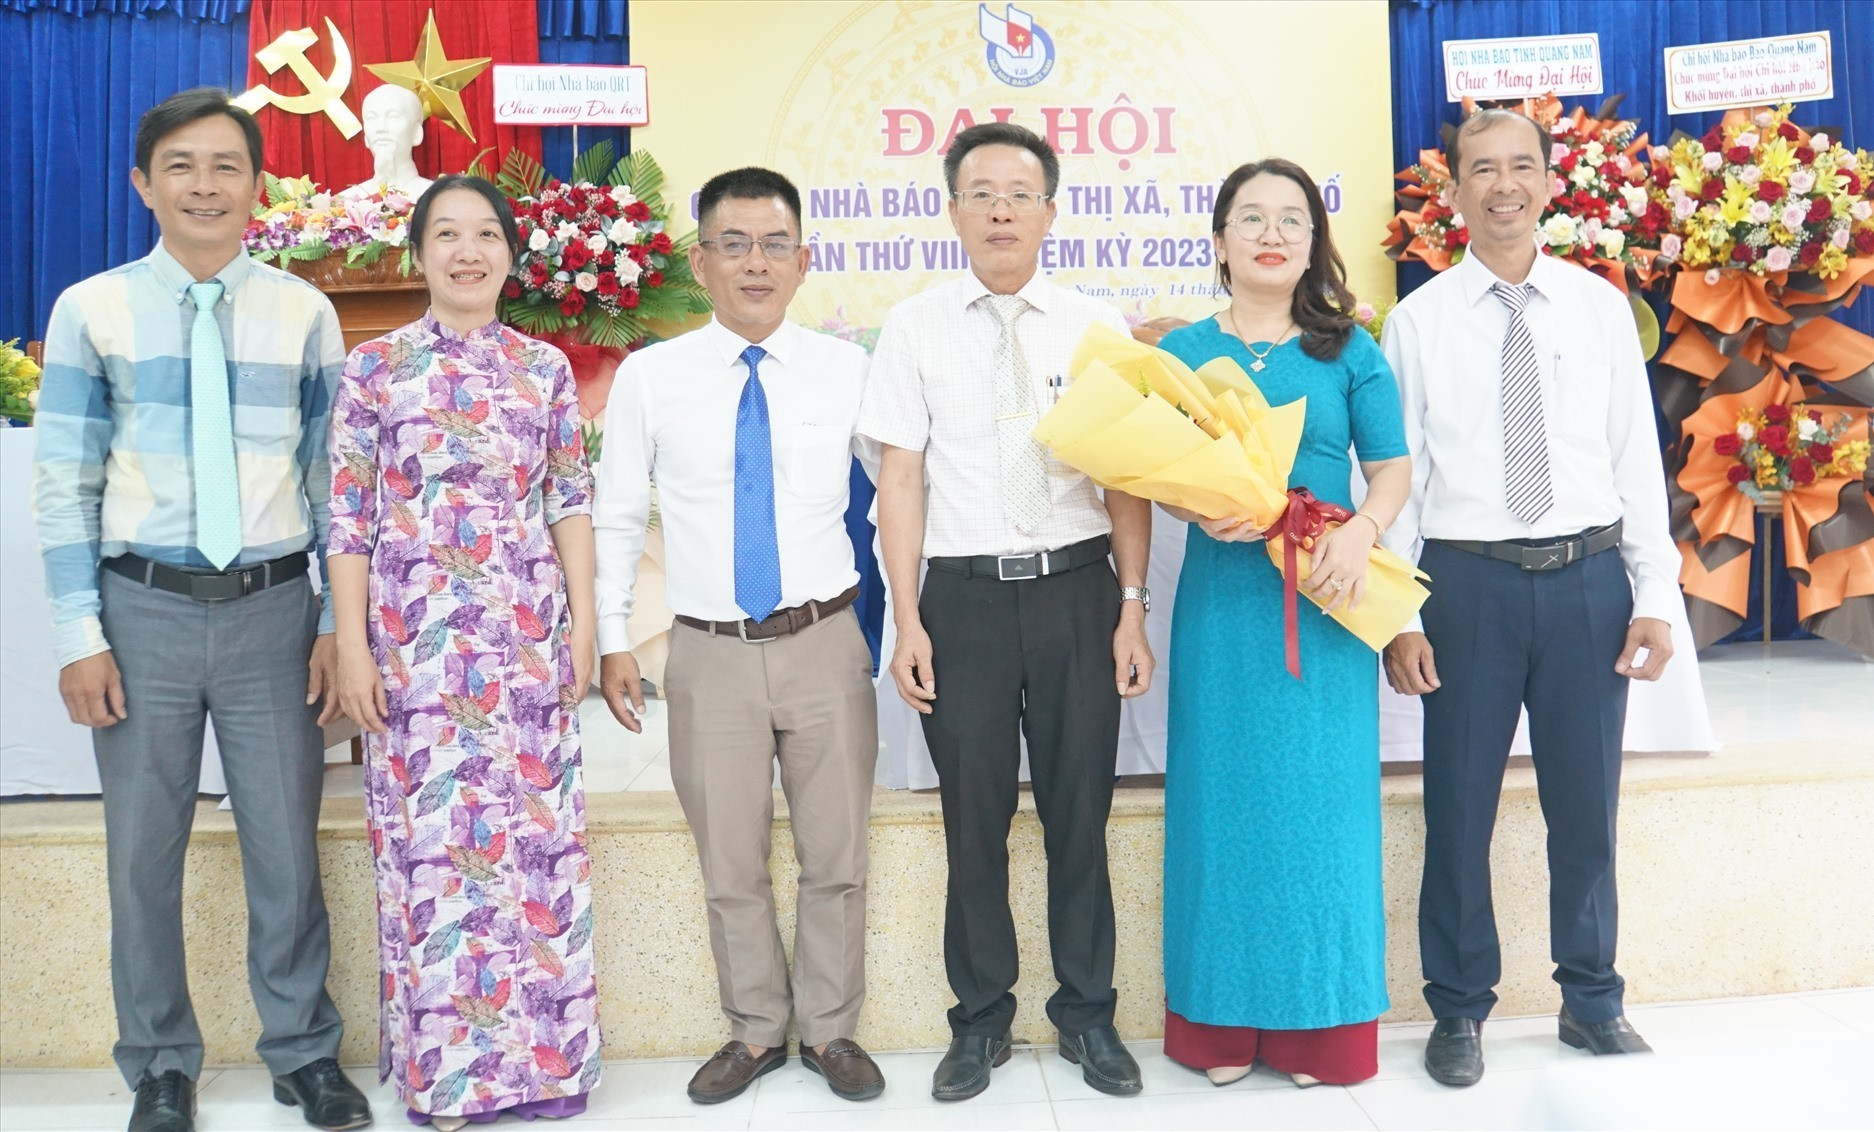 Nhà báo Lê Văn Nhi - Chủ tịch Hội Nhà báo Quảng Nam tặng hoa chúc mừng